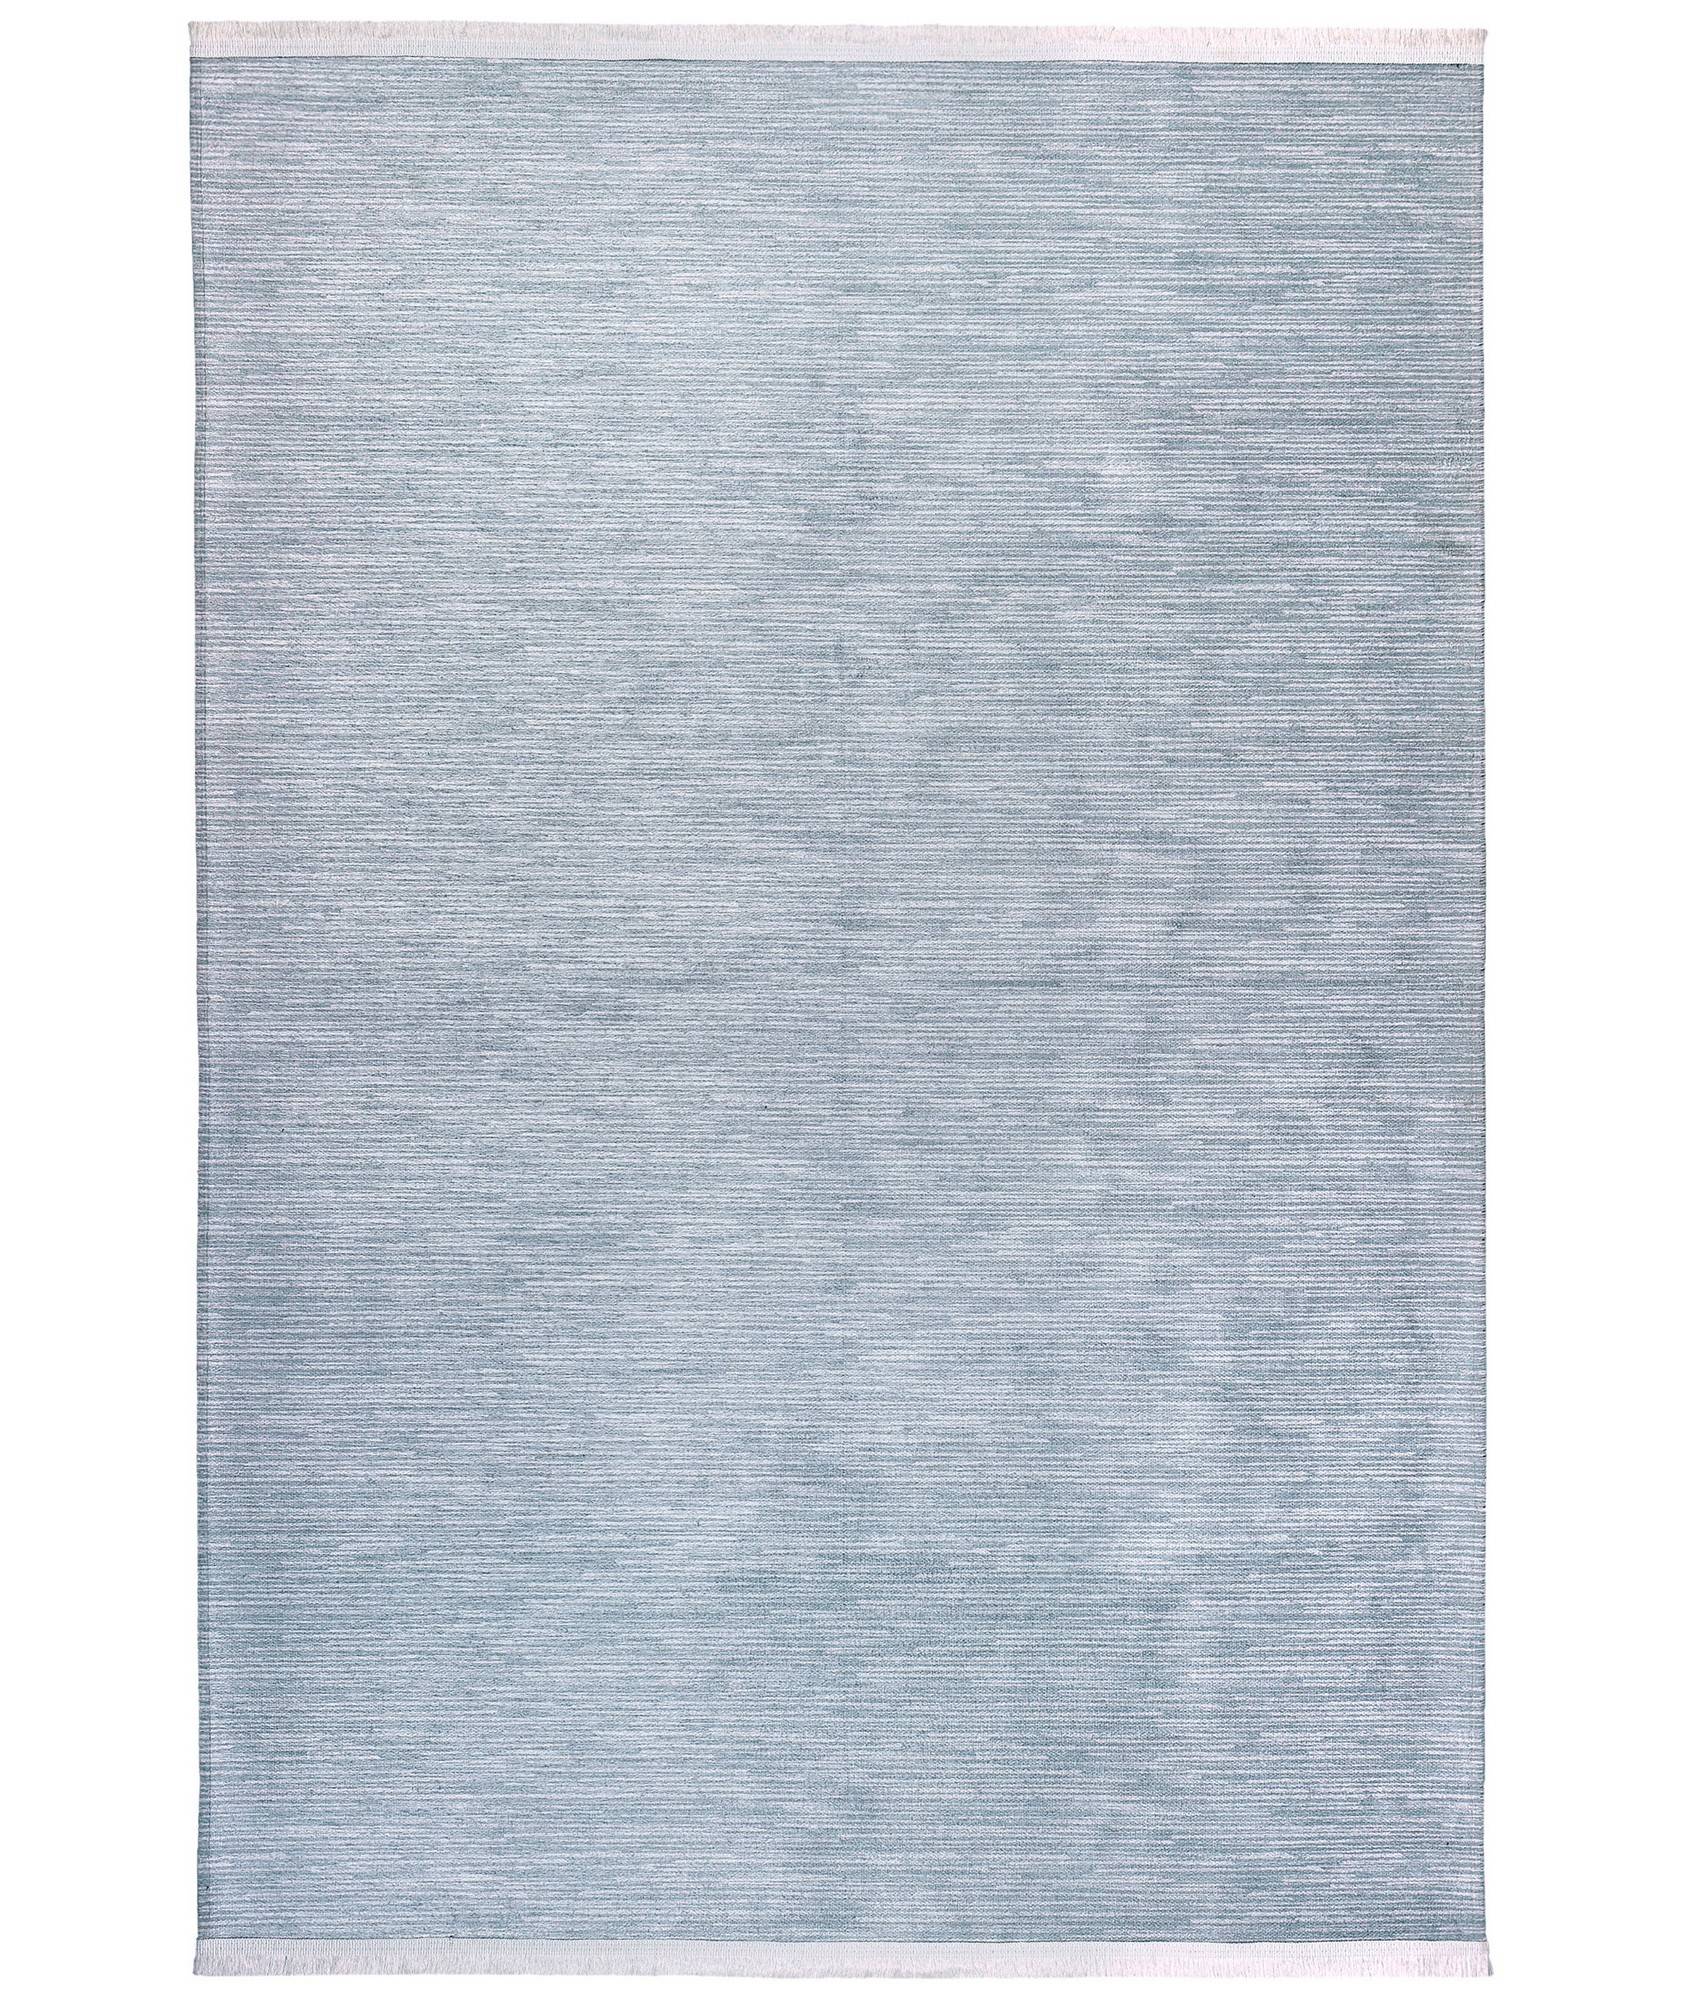 Bohni Teppich 80x200cm 100% Velours Blau und Weiß